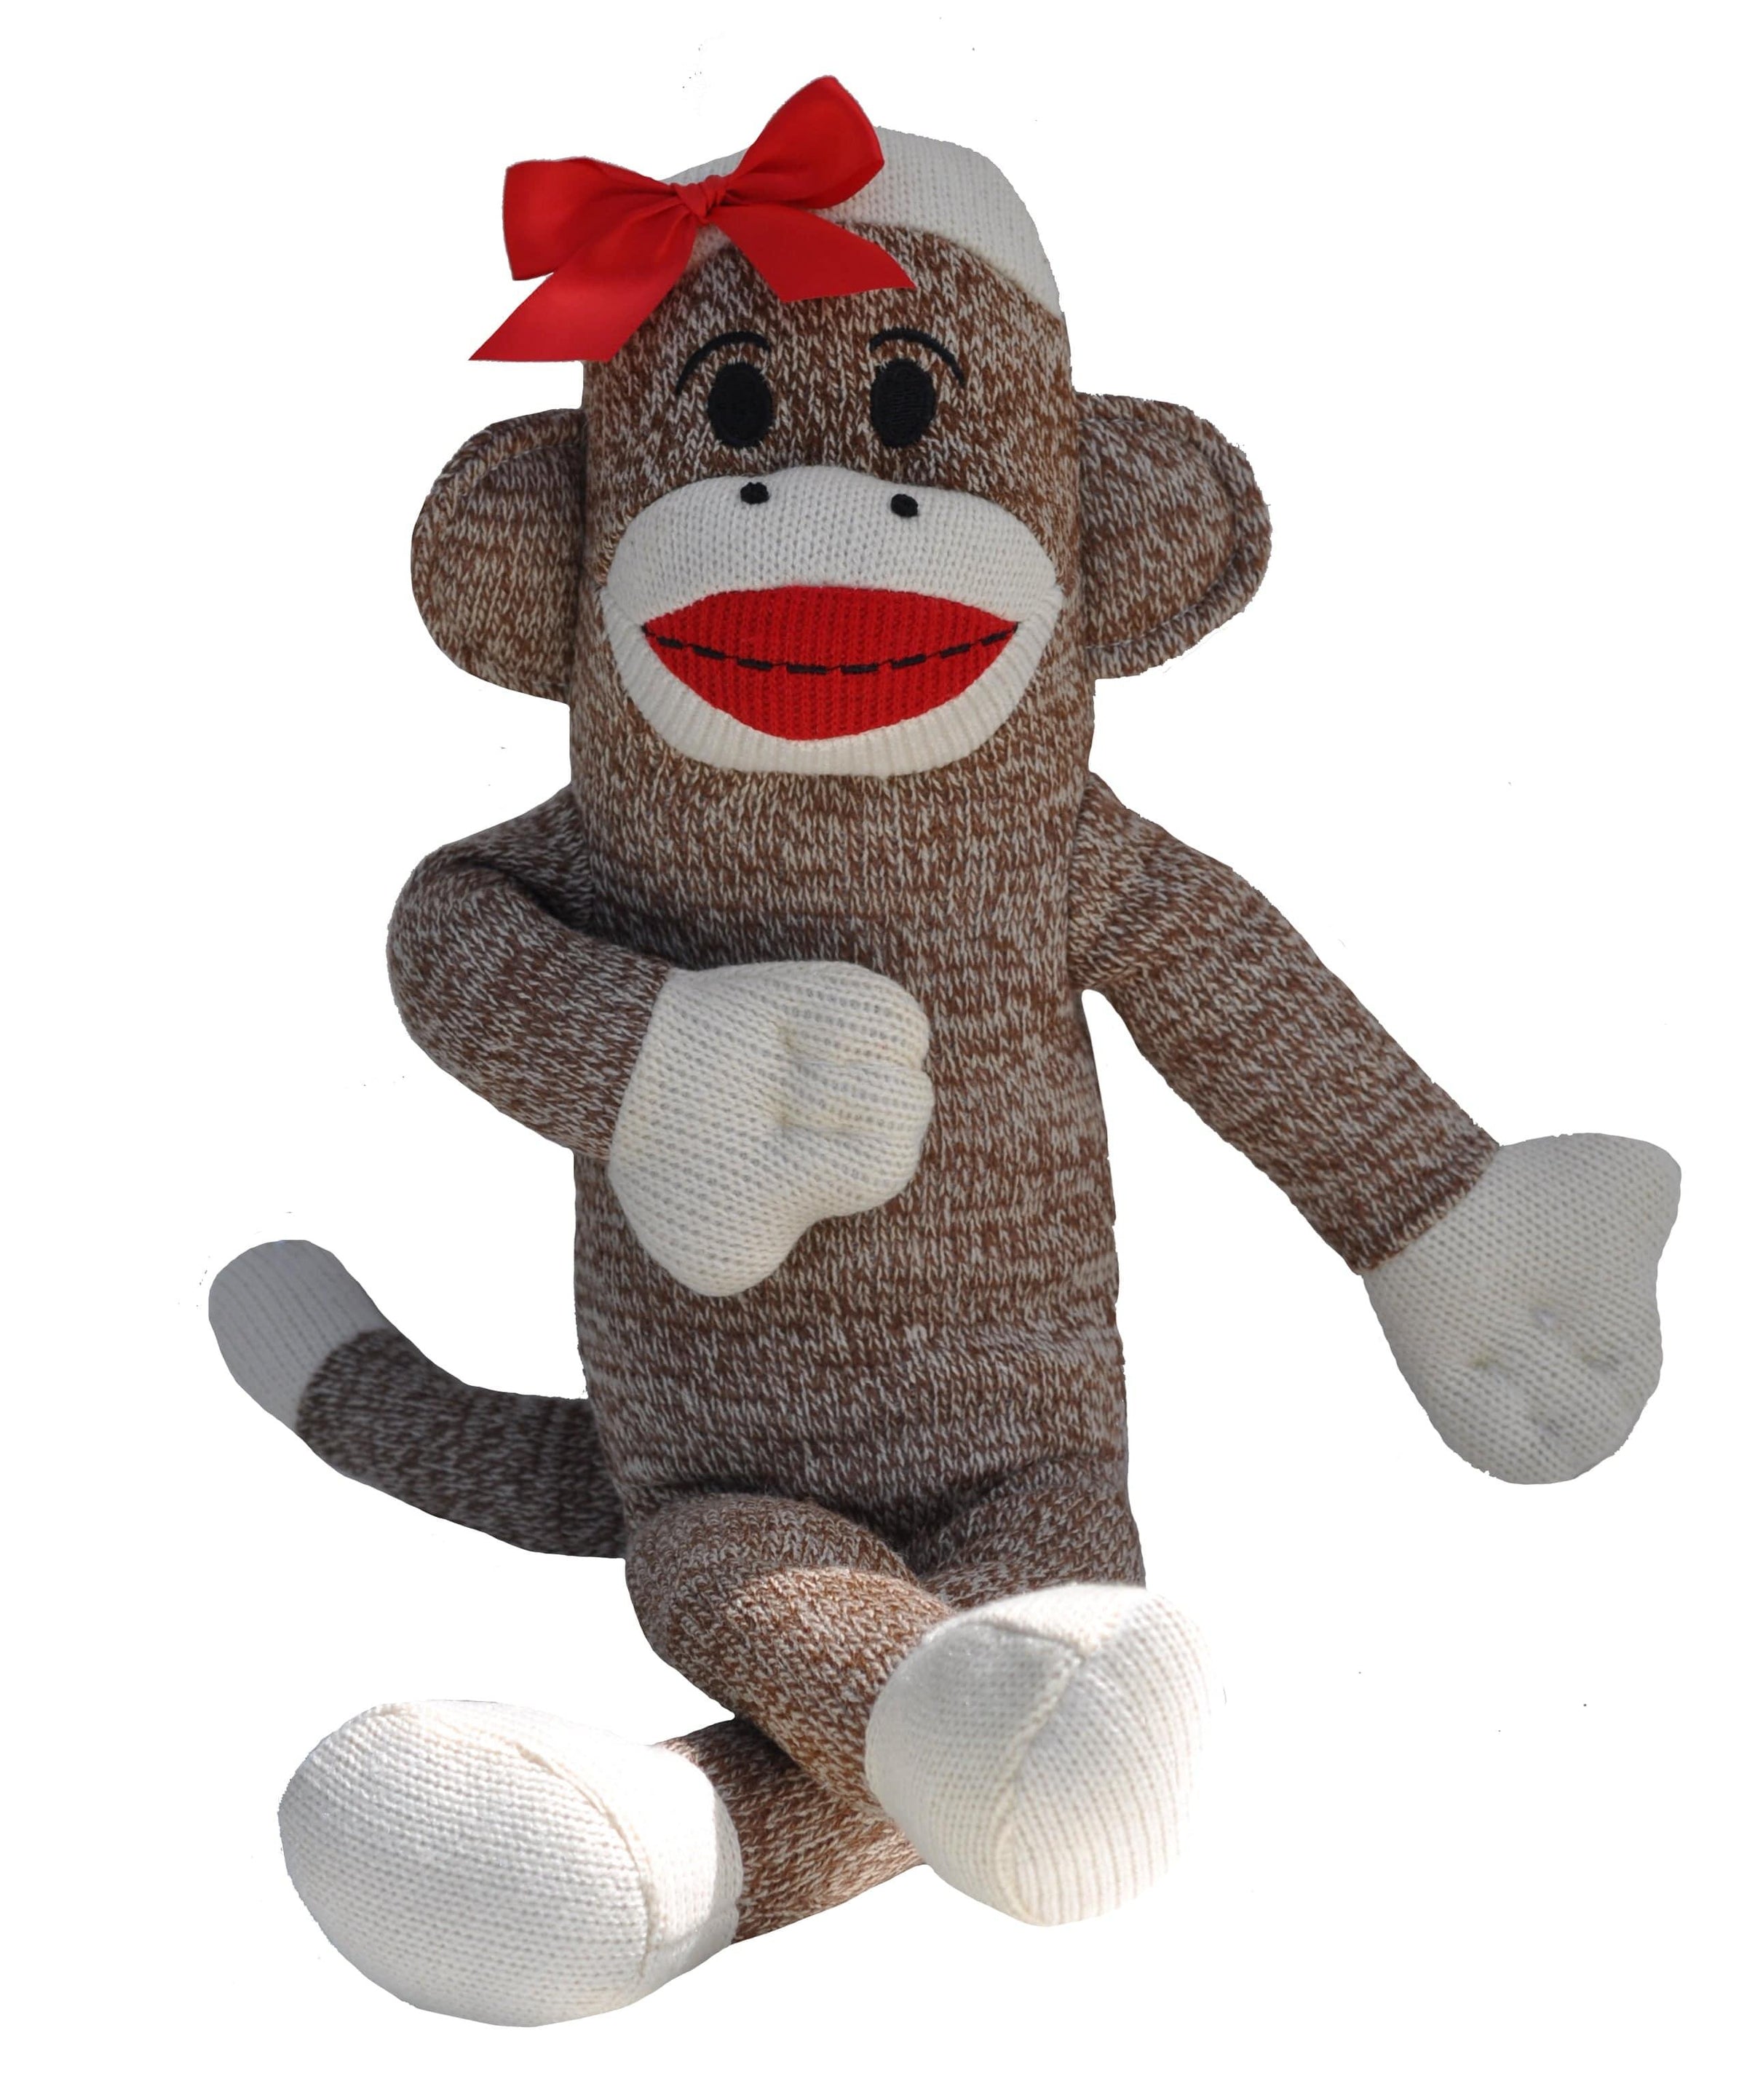 sock monkey stuffed animal